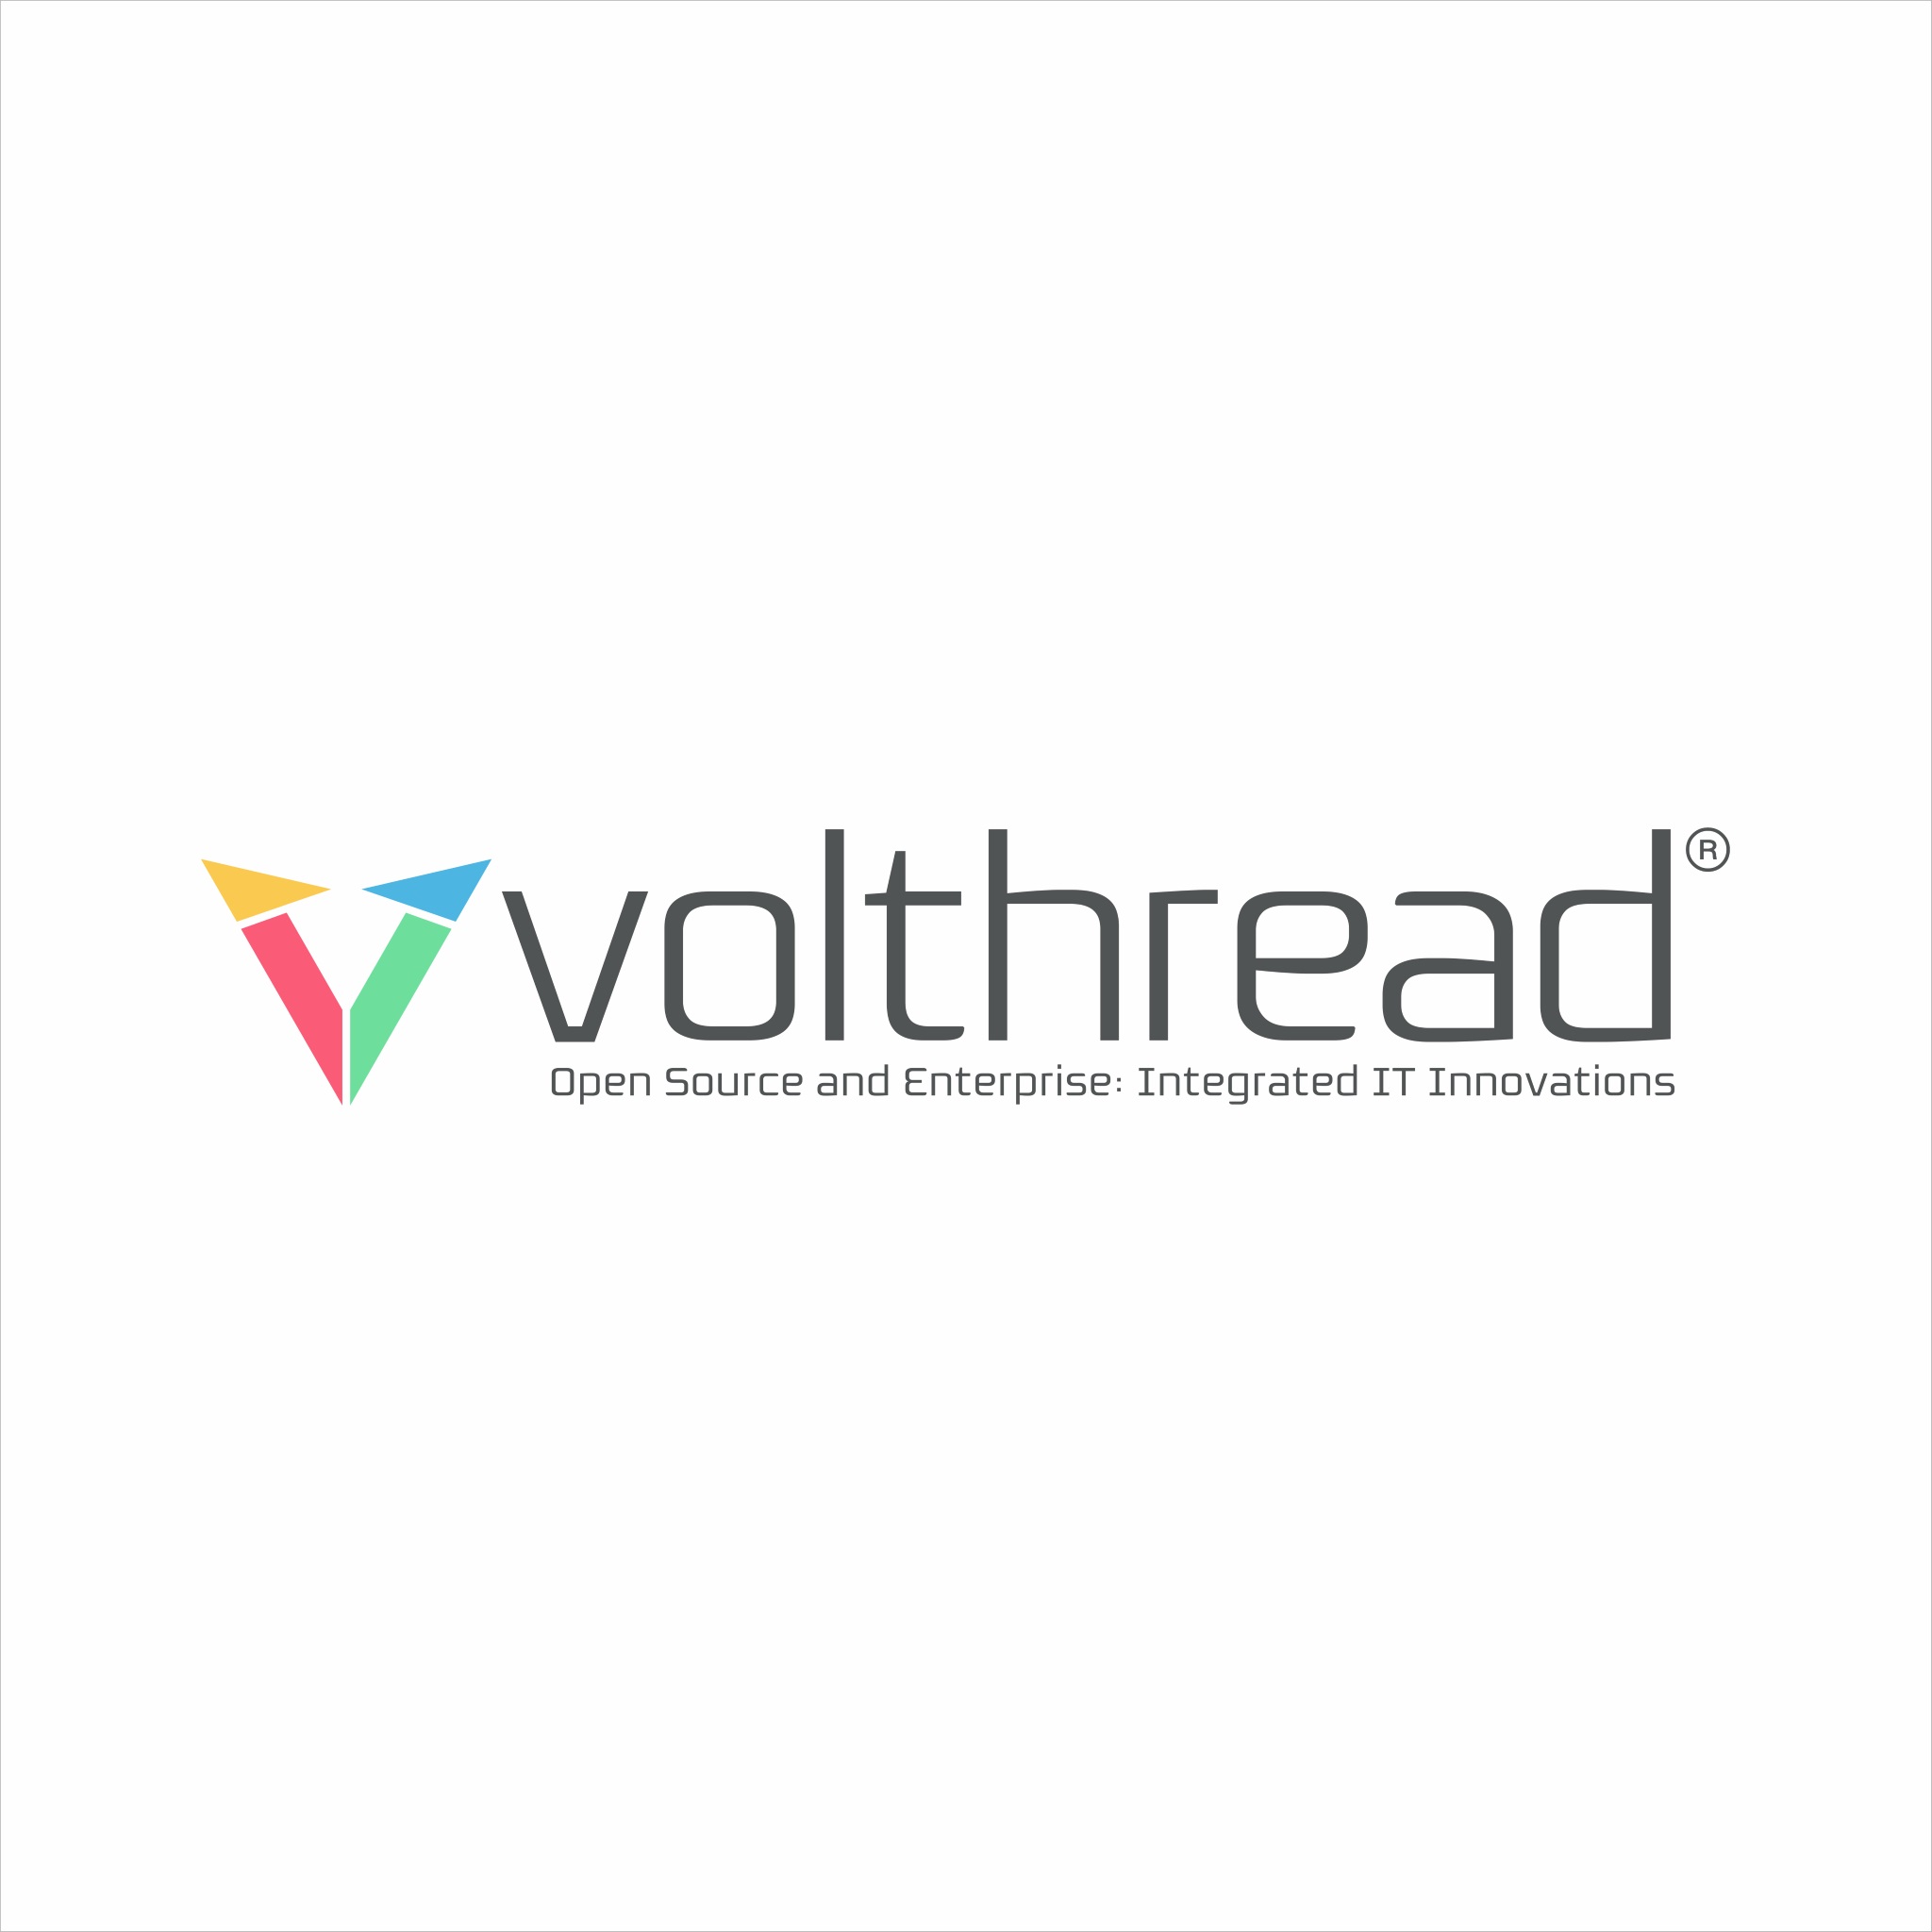 volthread logo